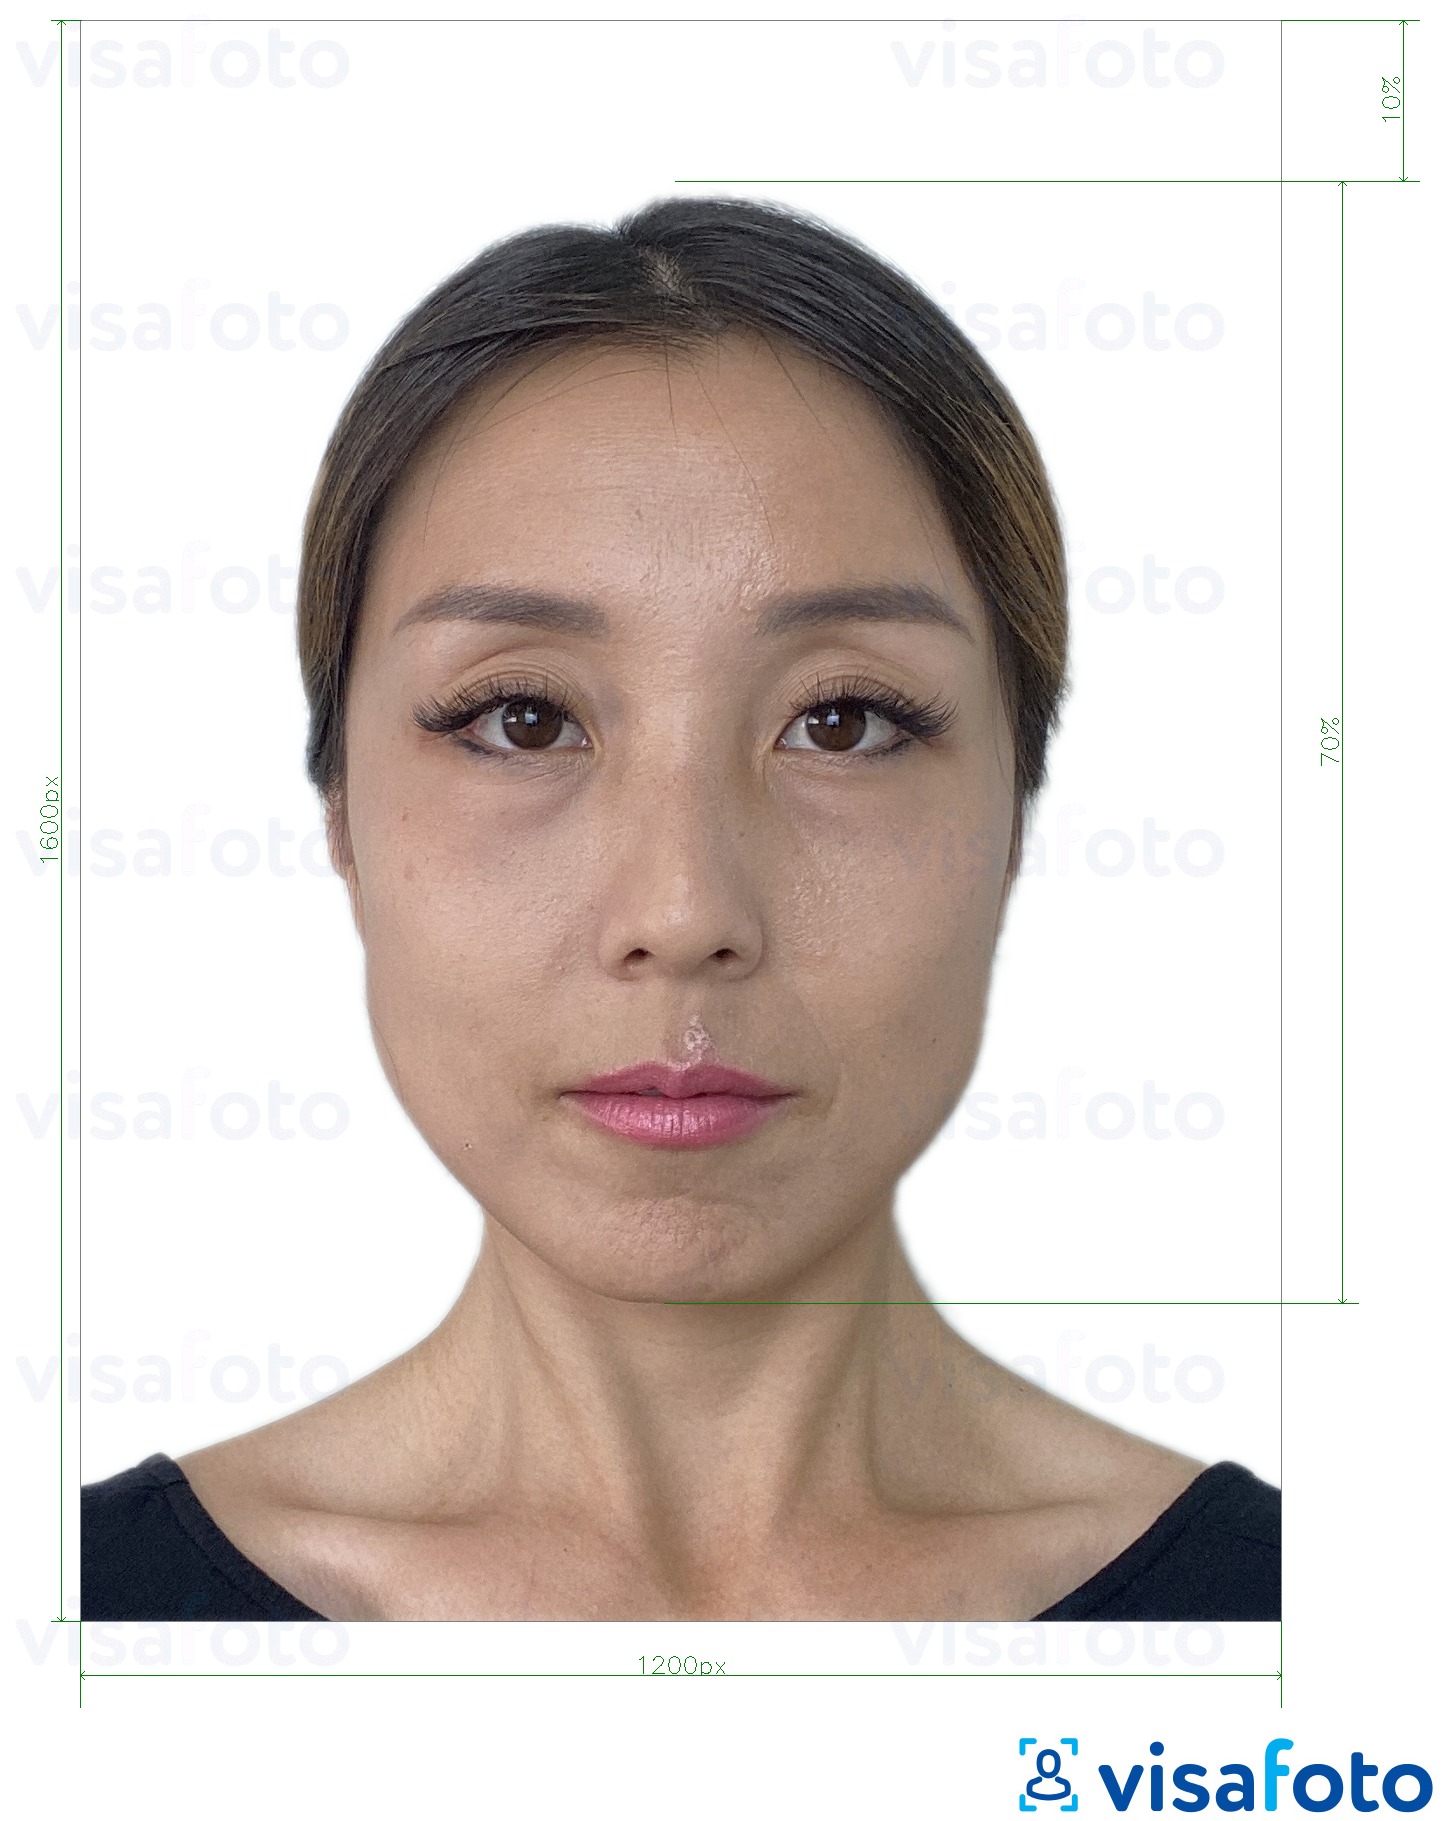 Exemplo de foto para Hong Kong on-line e-passaporte 1200x1600 pixels com especificação exata de dimensão